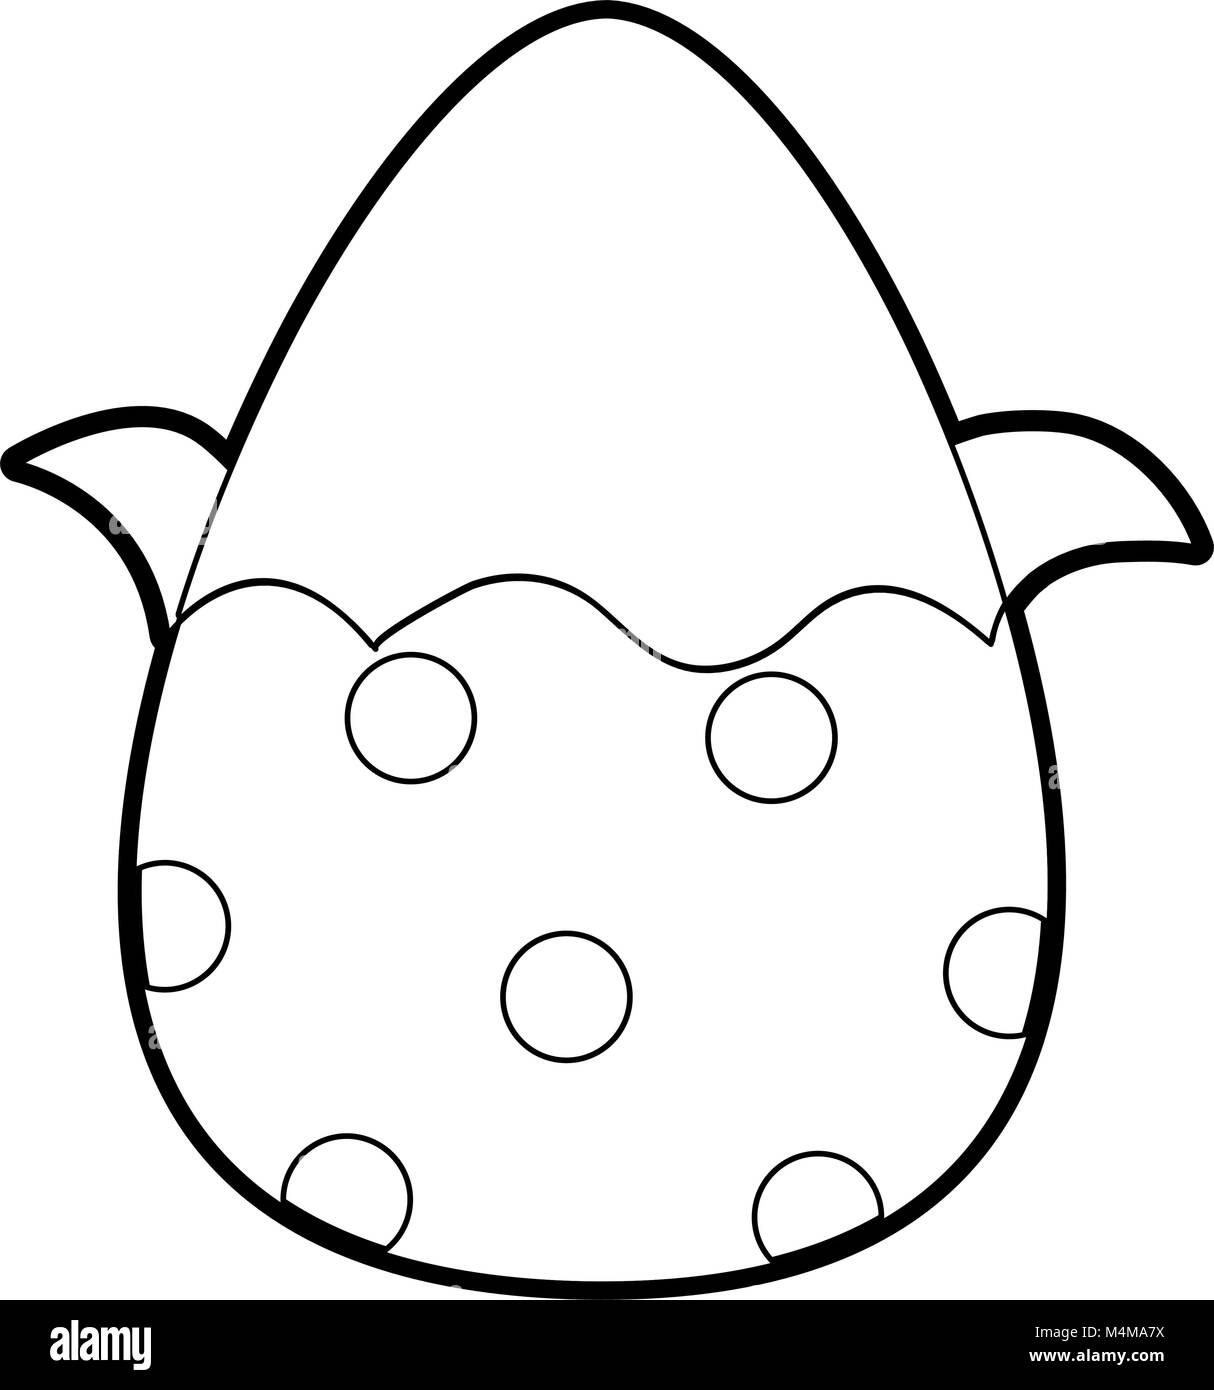 Schema uovo di cioccolato di pasqua con decorazione di punti Illustrazione Vettoriale